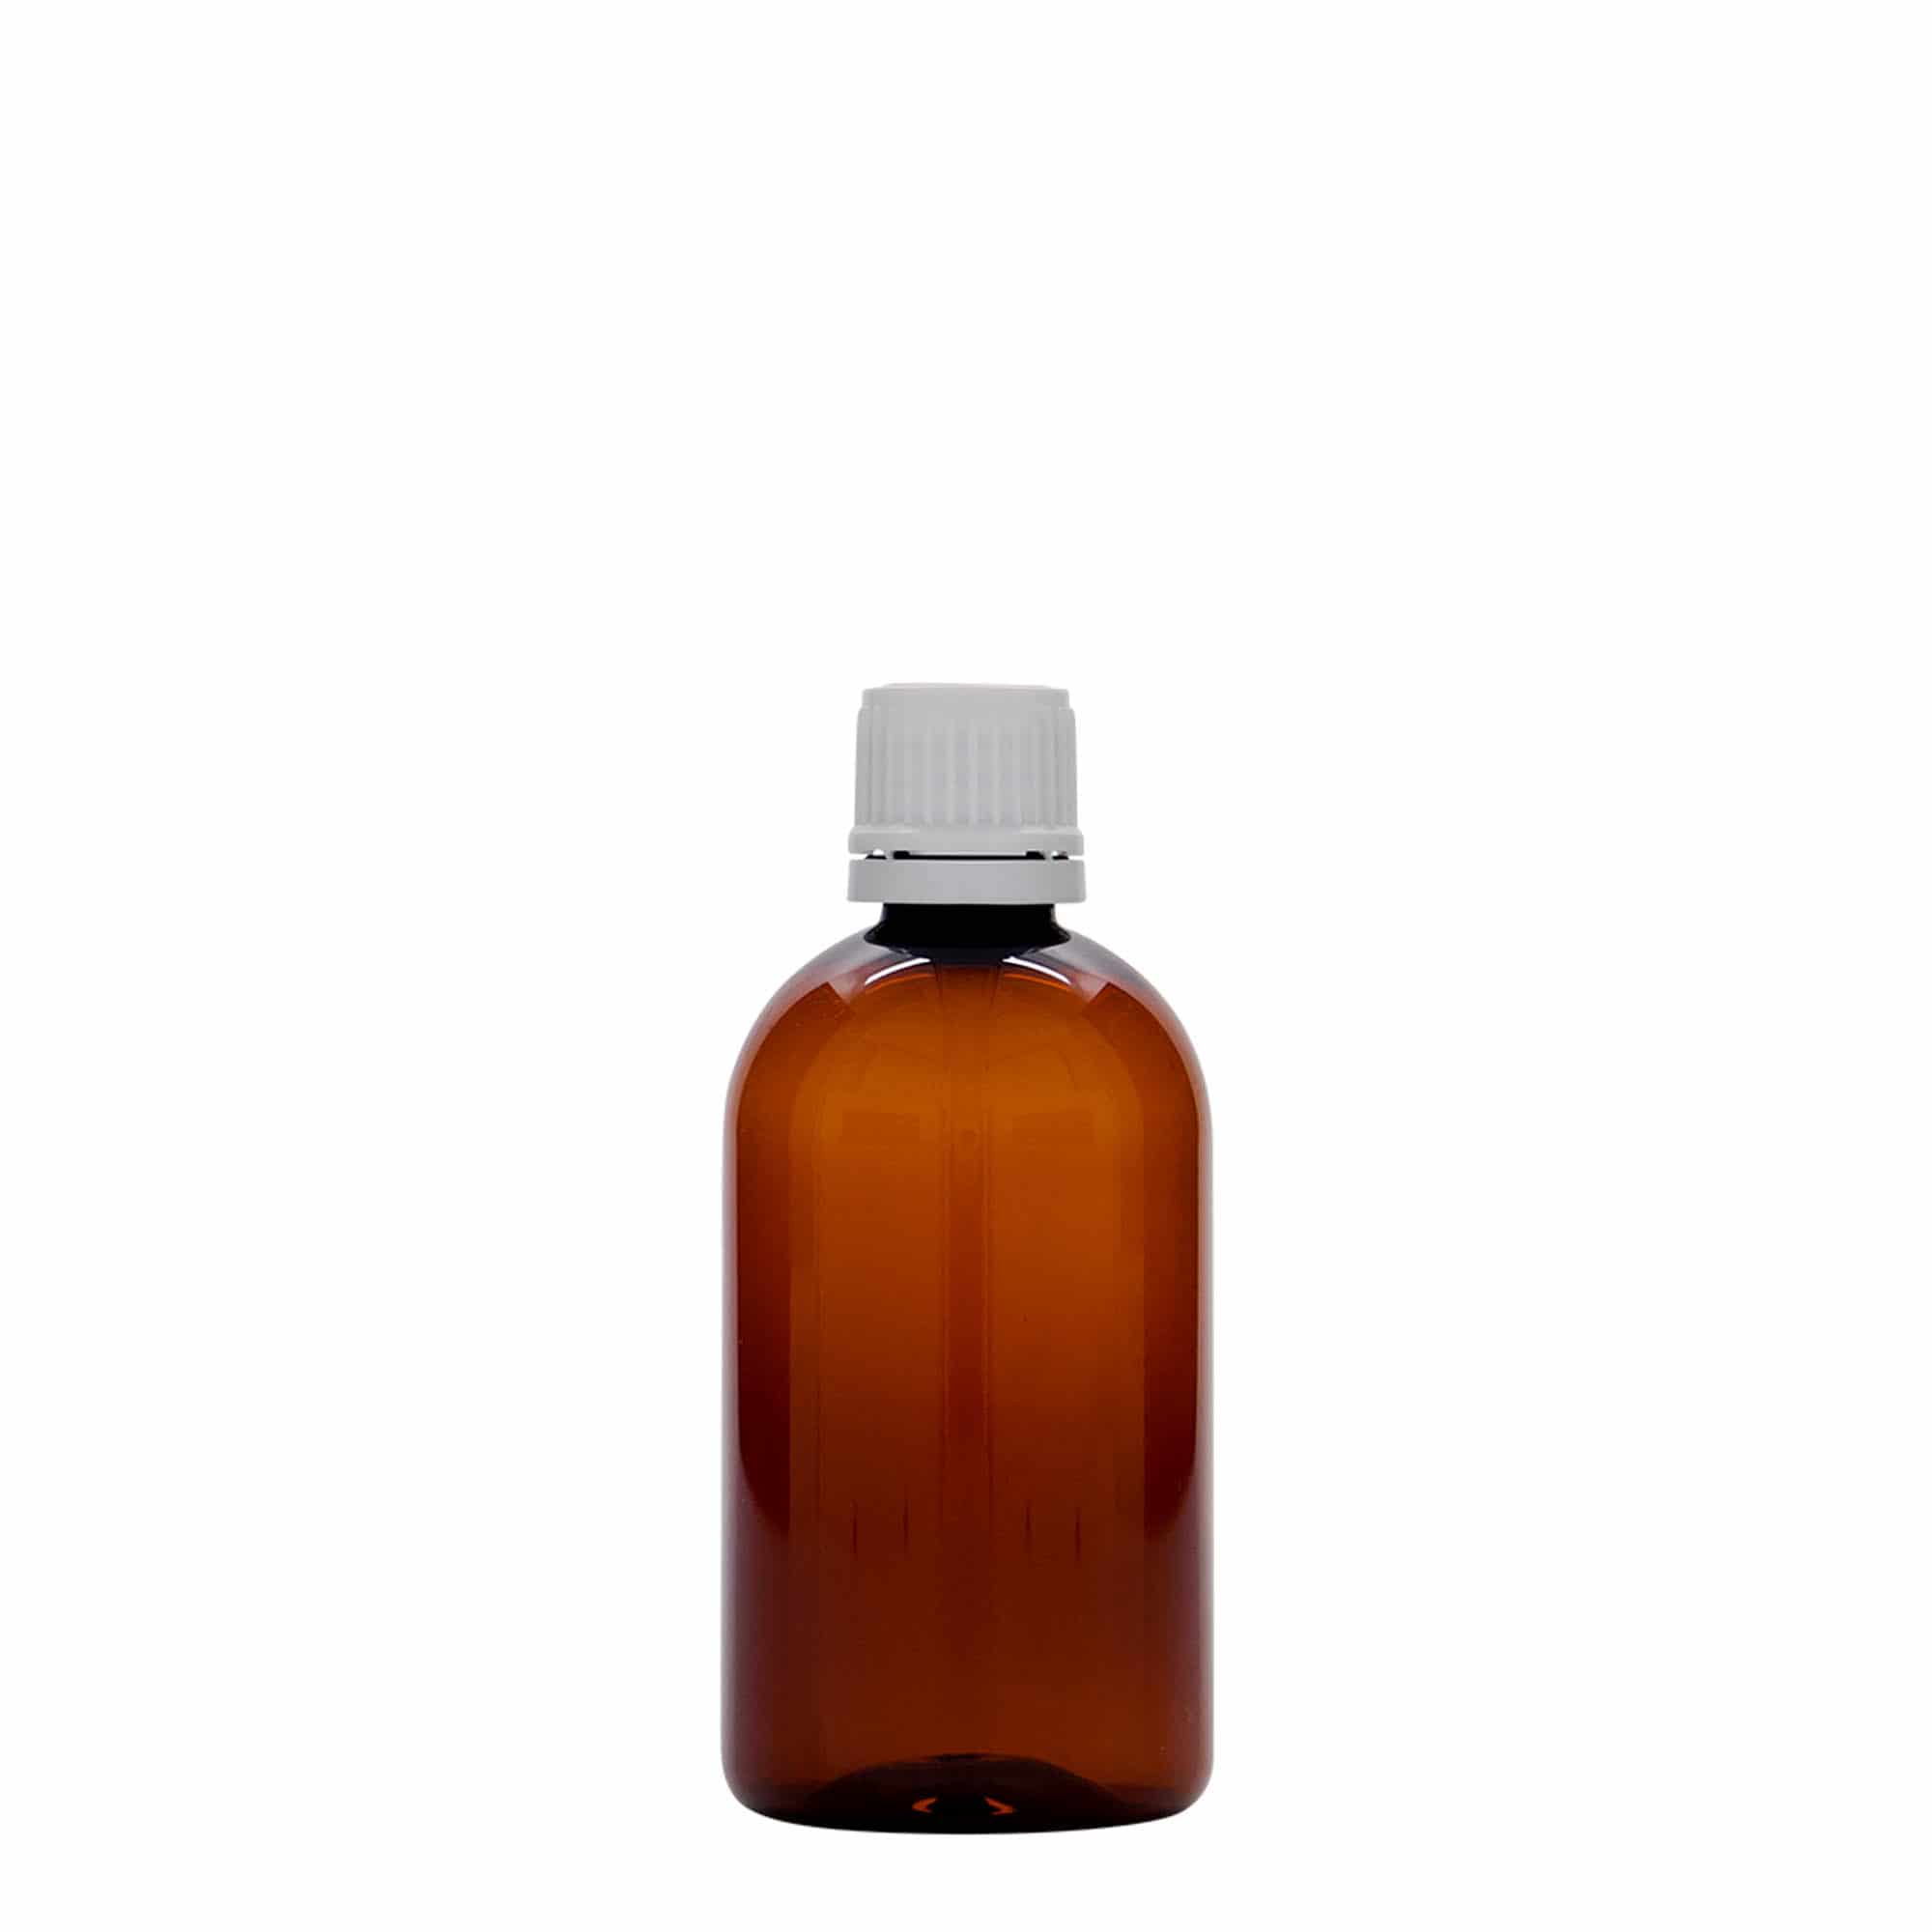 100 ml butelka farmaceutyczna PET 'Easy Living', kolor brązowy, tworzywo sztuczne, zamknięcie: DIN 18